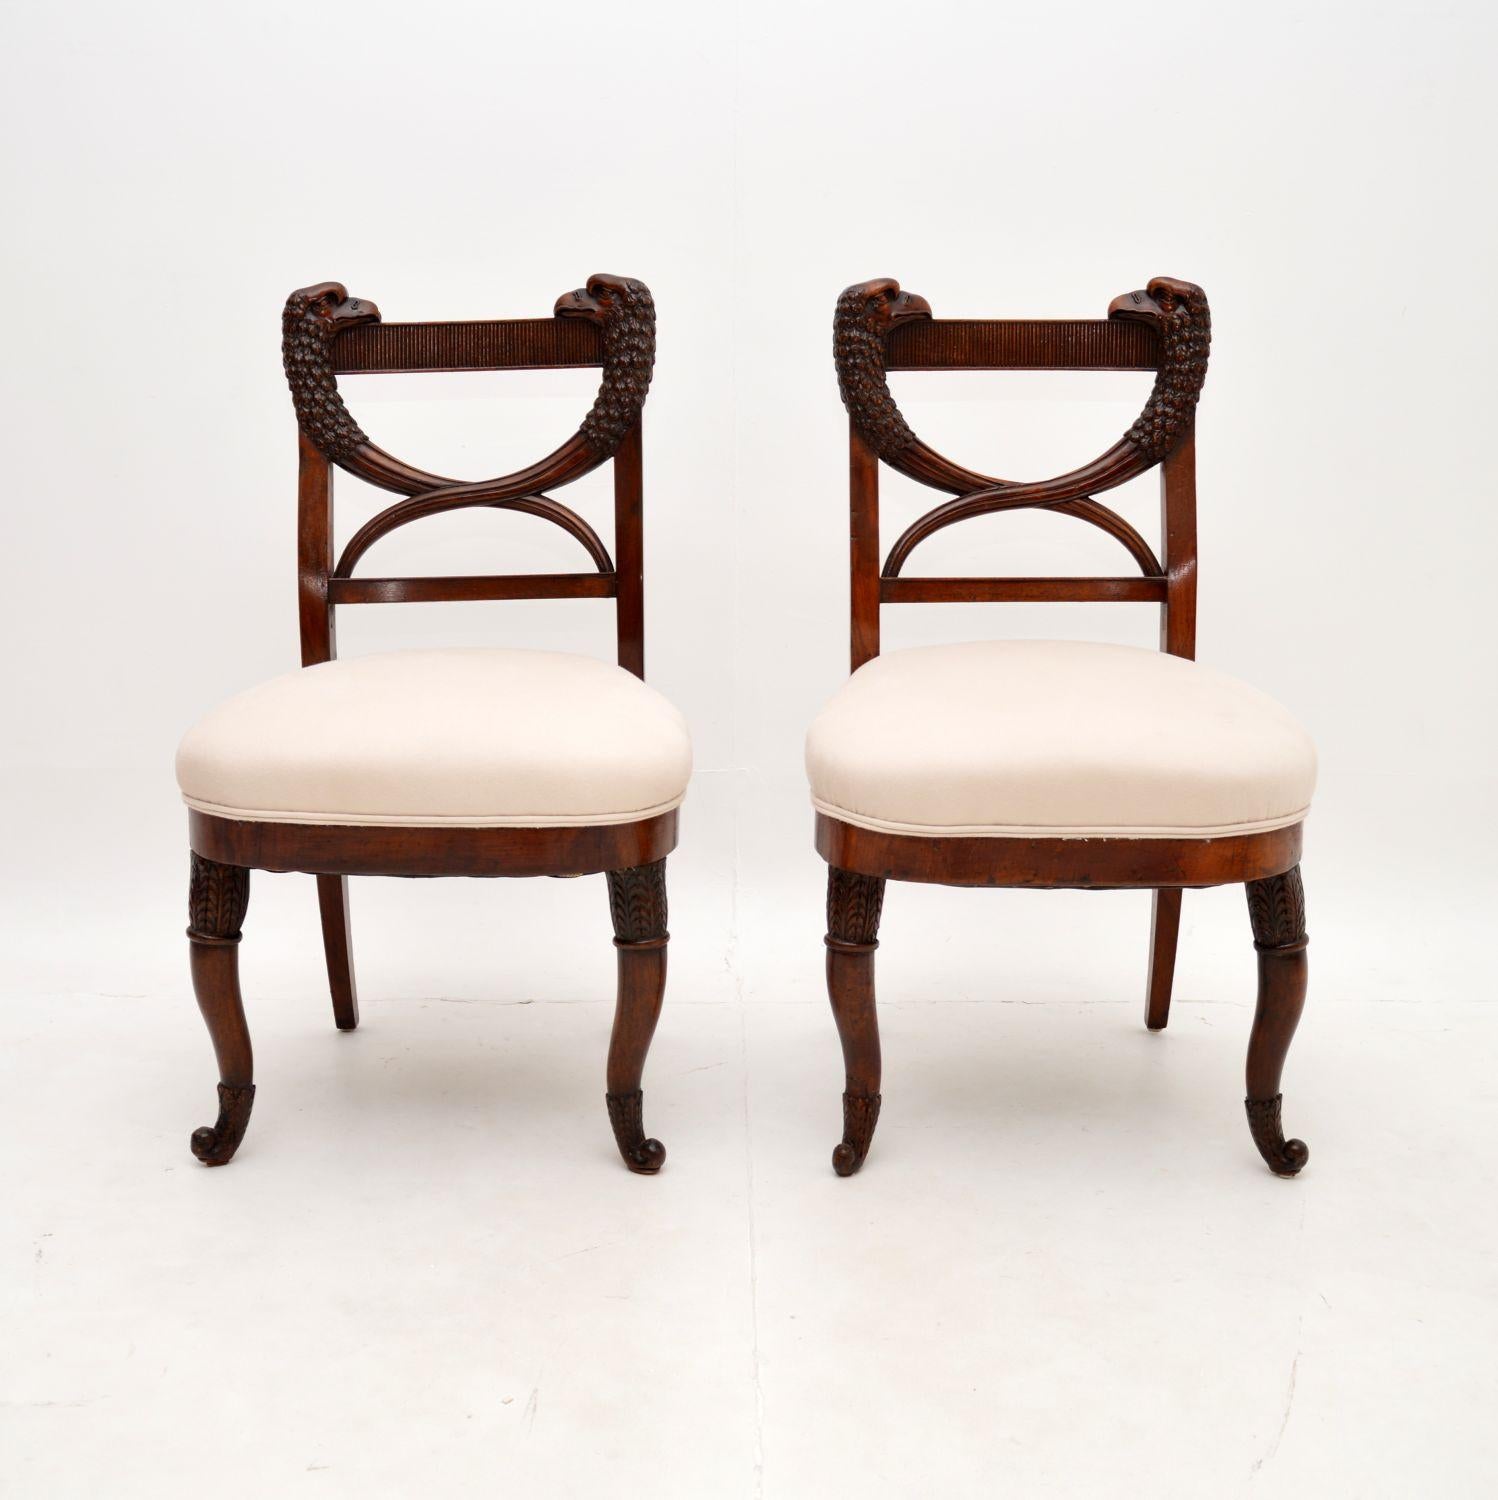 Une fantastique paire de chaises d'appoint antiques sculptées. Ils ont été fabriqués en Europe continentale, peut-être au Danemark ou dans un pays proche, et sont assez anciens, datant de la période 1790-1820, voire plus tôt.

Ils sont d'une qualité